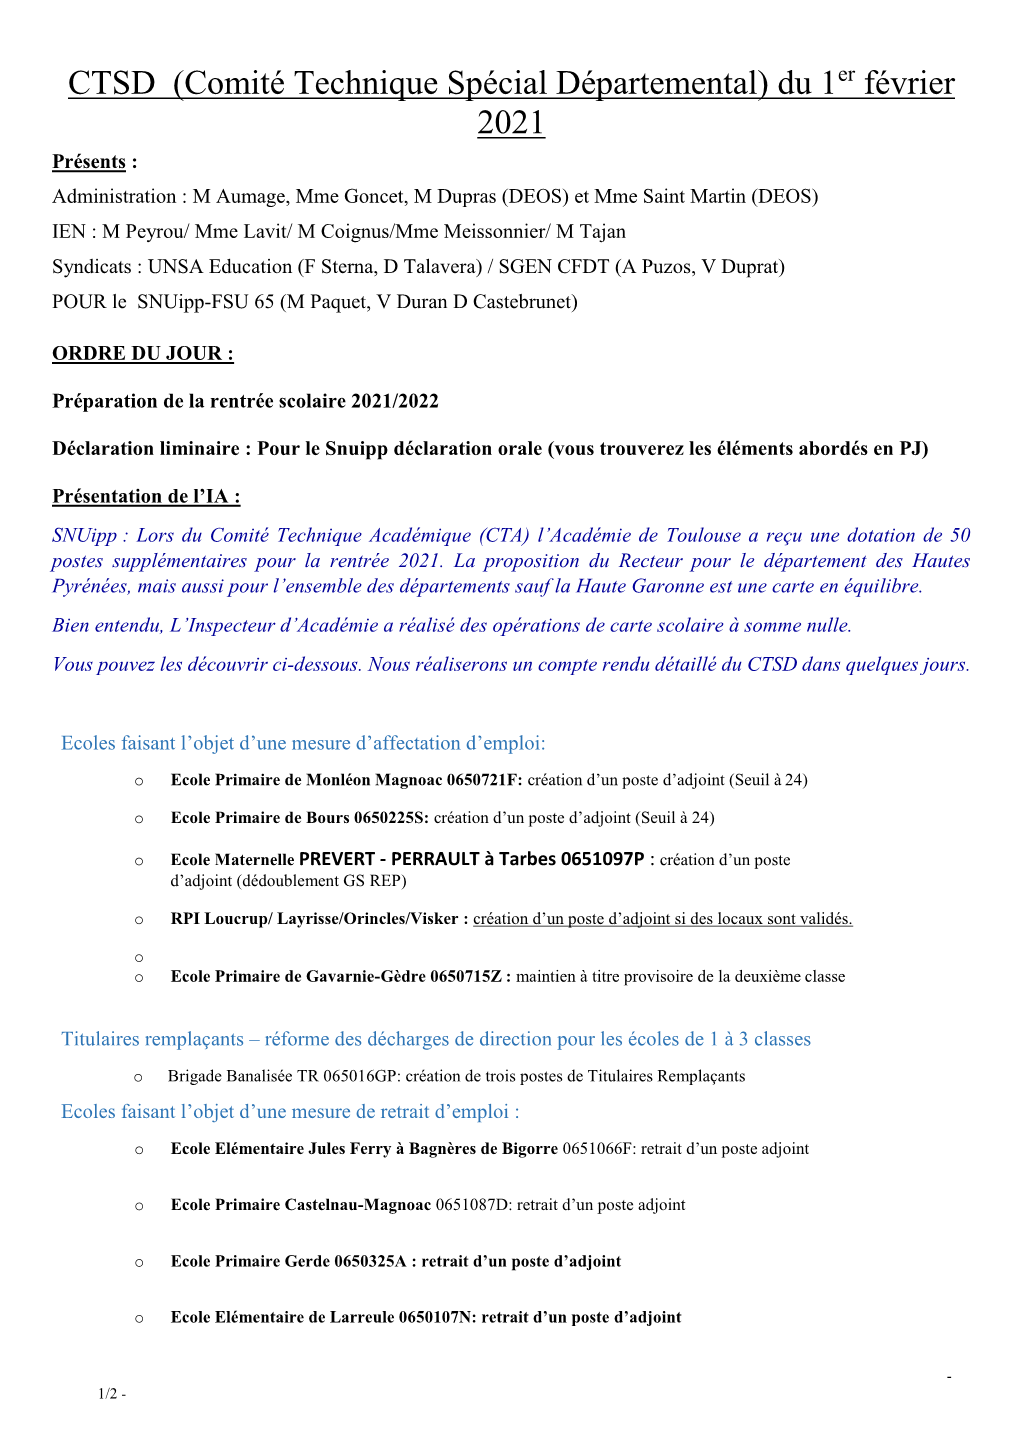 CTSD (Comité Technique Spécial Départemental) Du 1 Février 2021